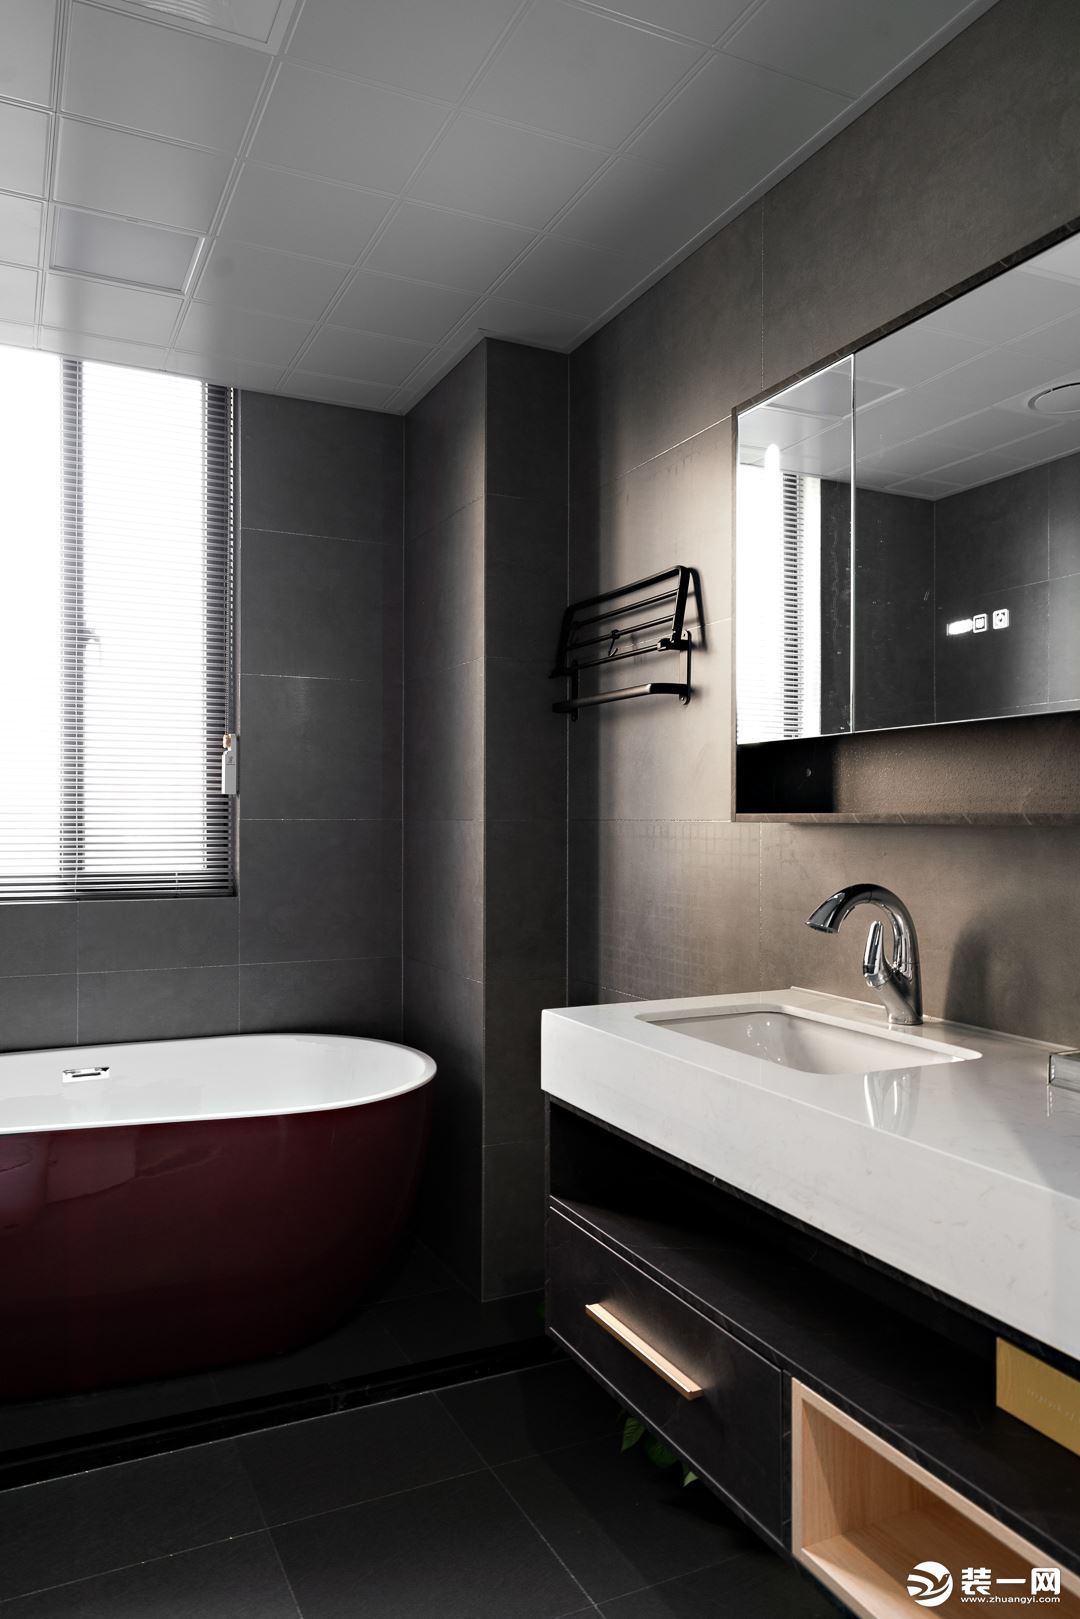 酒红色浴缸为空间注入摩登气韵，与浴室柜的金属元素彼此映衬，打造出独具品味的都市浴享空间。